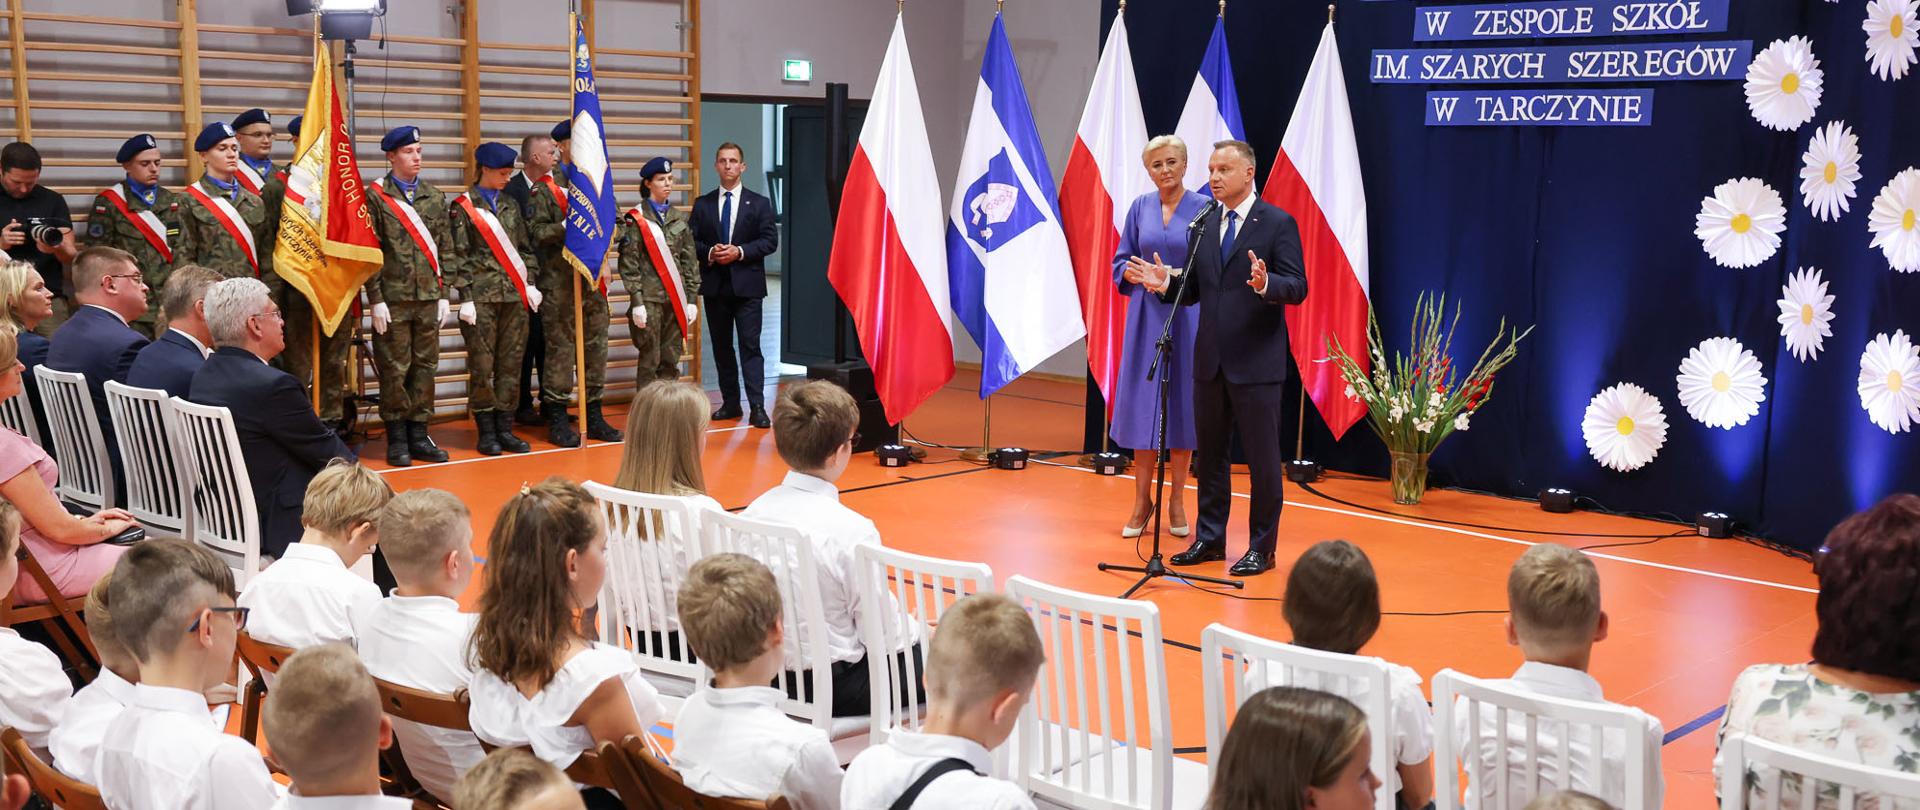 Przy mikrofonie para prezydencka, po lewej stronie uczniowie ubrani w mundury, na pierwszym planie dzieci ubrane w białe bluzki i koszule 